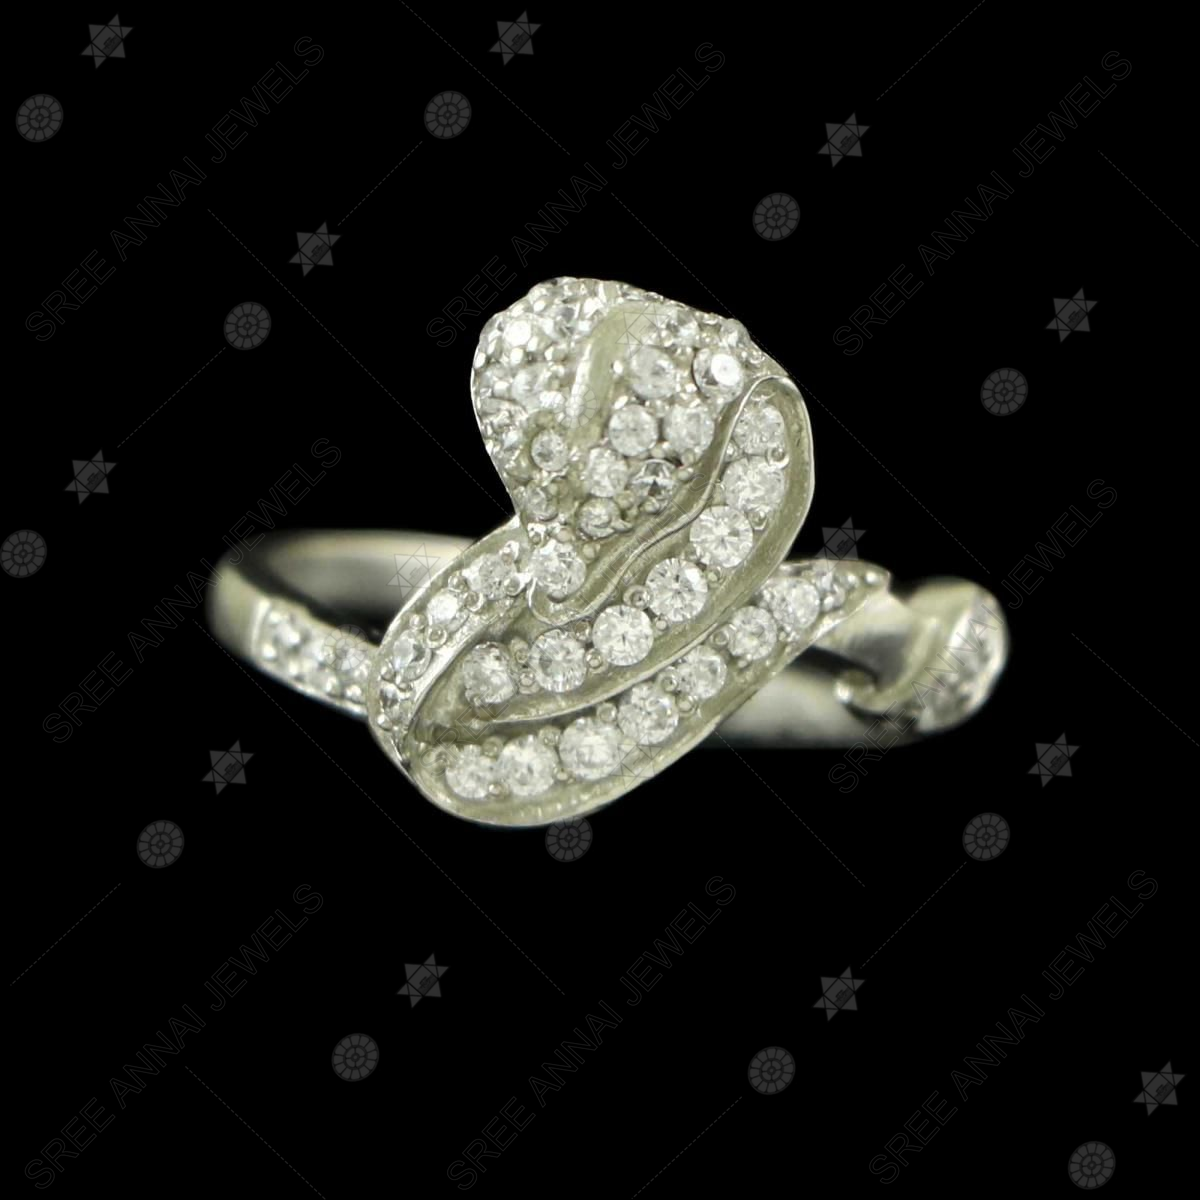 1940's Antique 18K White Gold 25-Diamond Cocktail Ring - $15K Appraisa